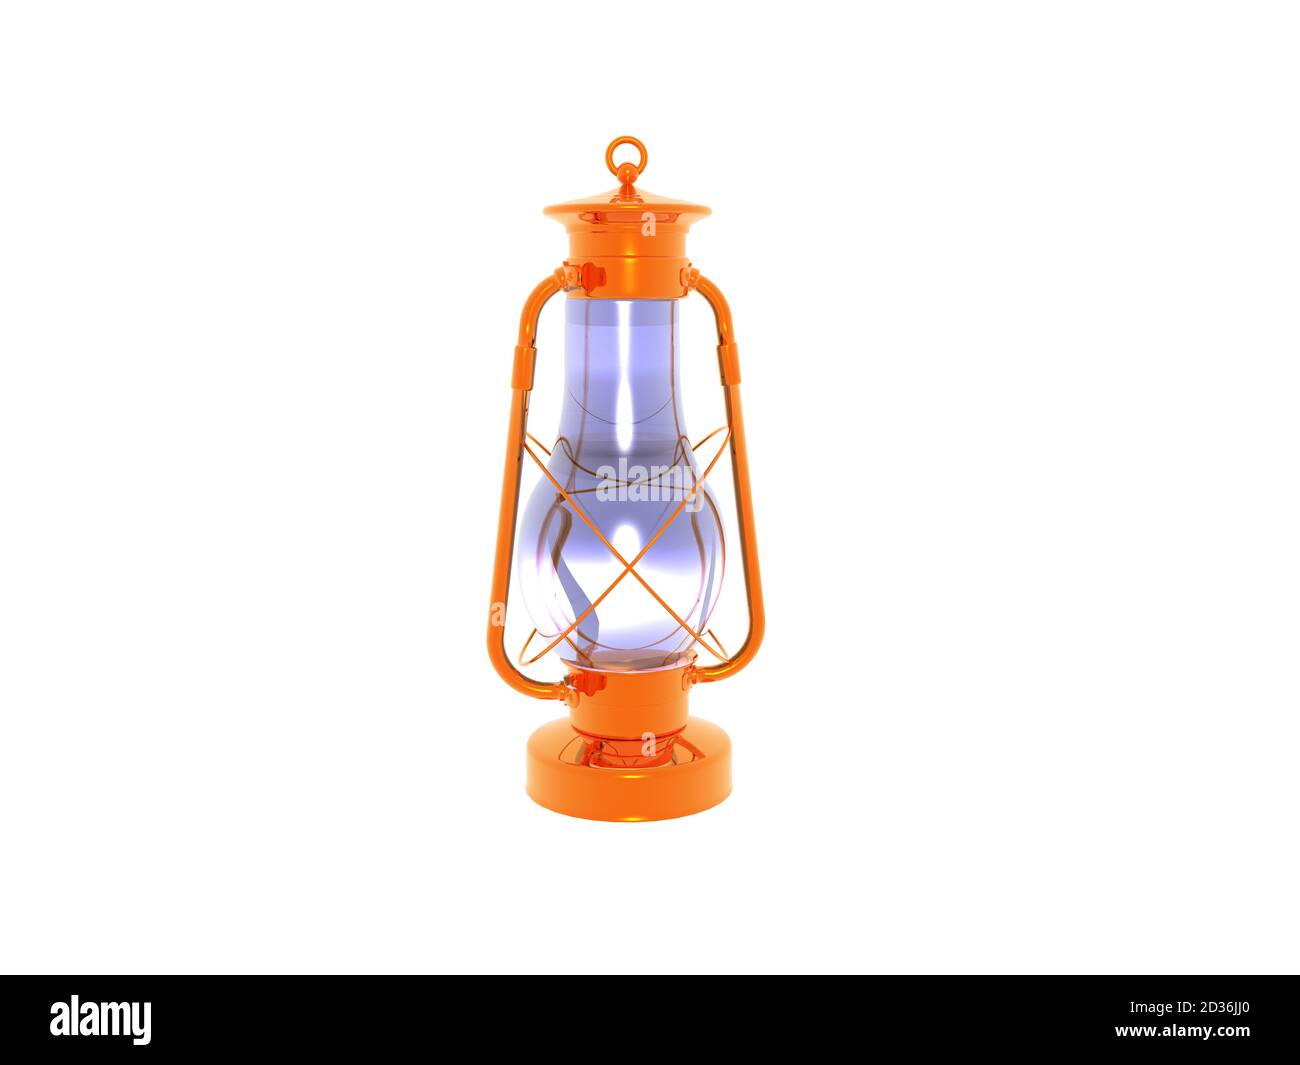 Orange Licht Der Glühlampen-Lampe Im Raum Nachts Stockfoto - Bild von glas,  nacht: 55244212